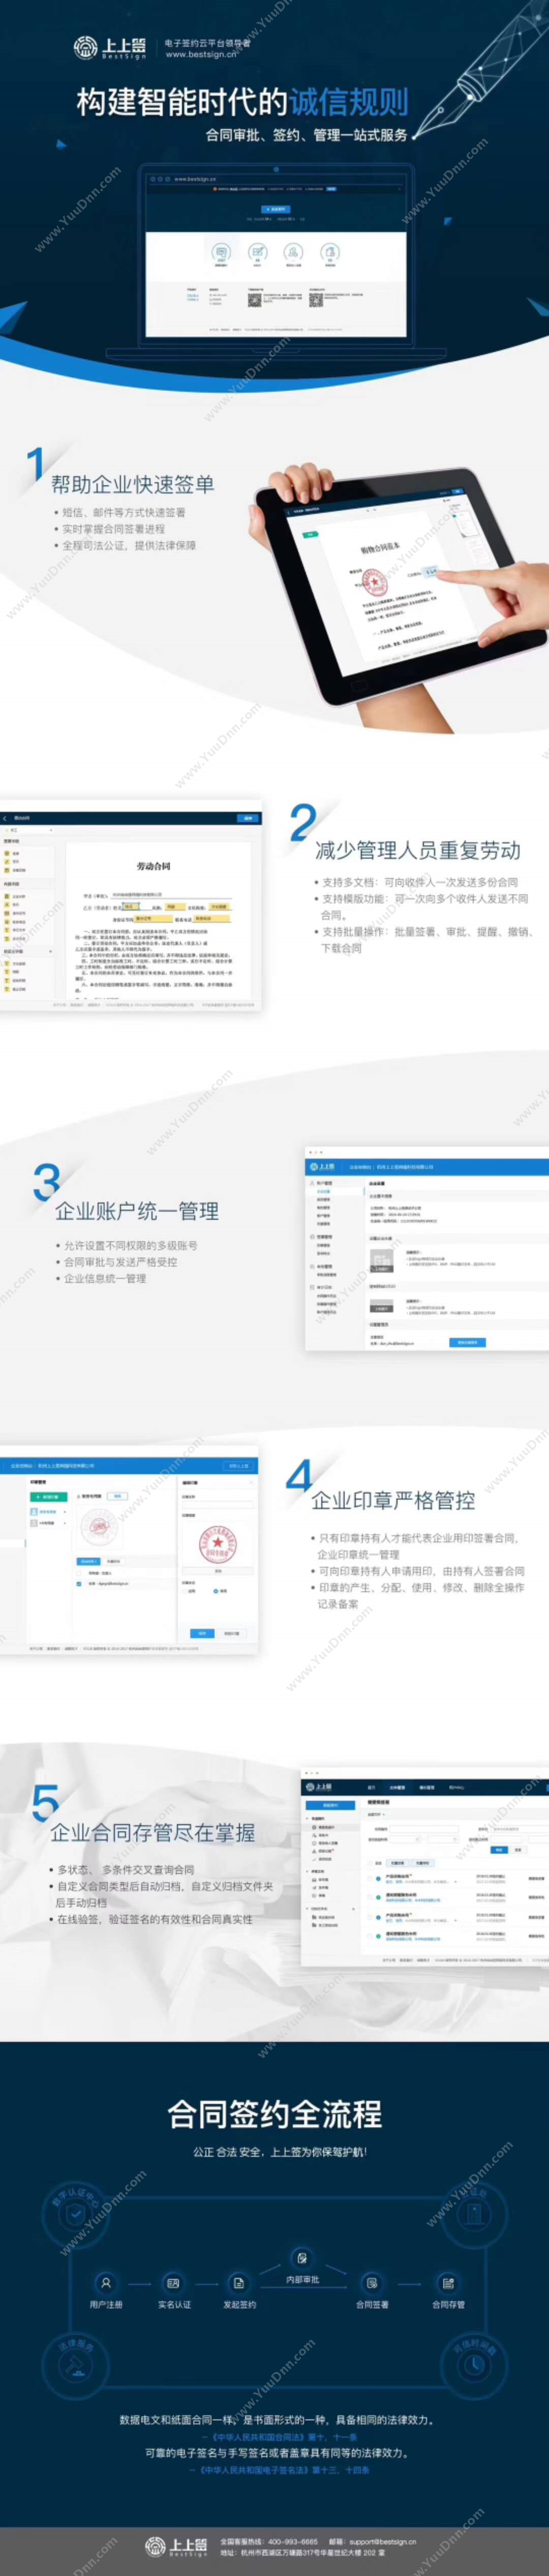 杭州尚尚签网络科技有限公司 上上签电子合同 电子签章